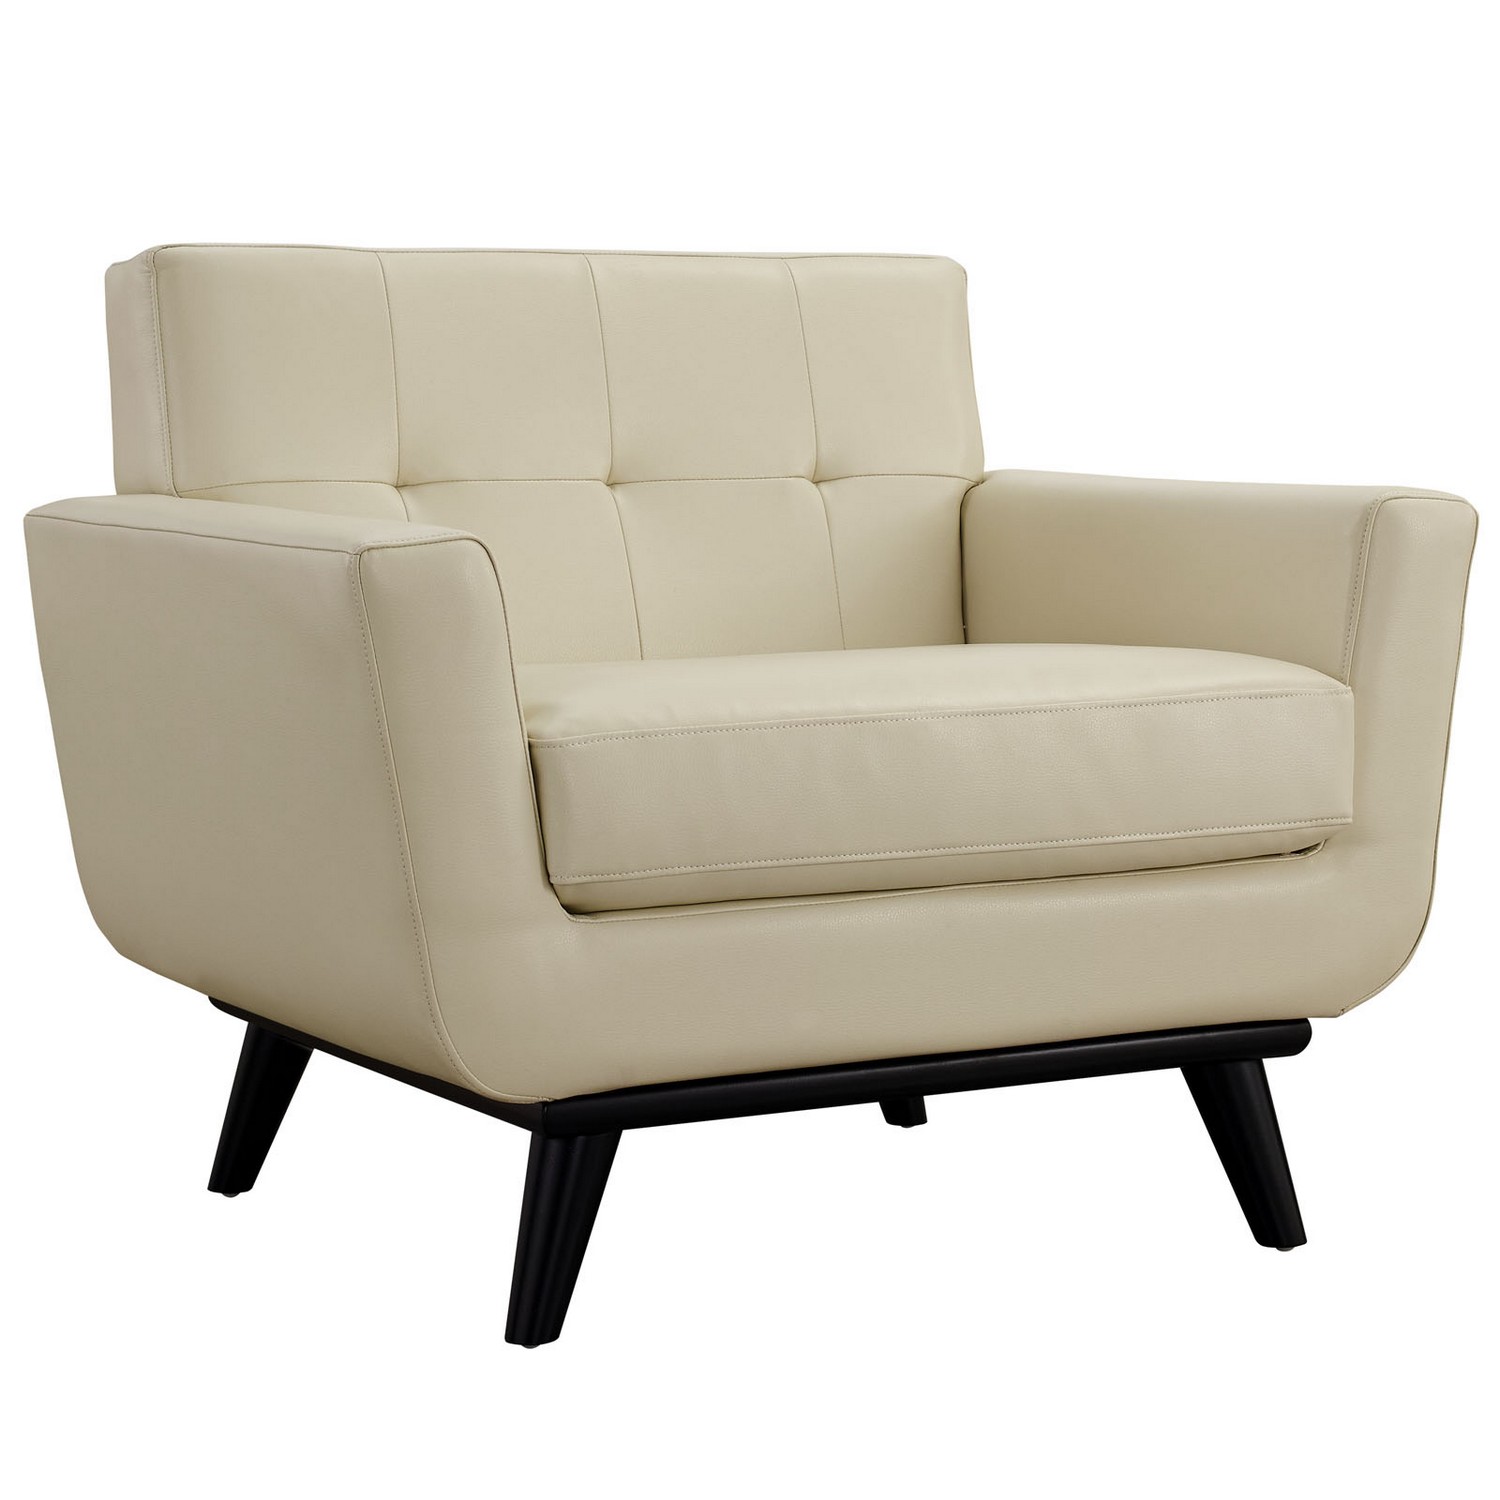 Modway Engage Leather Sofa Set - Beige